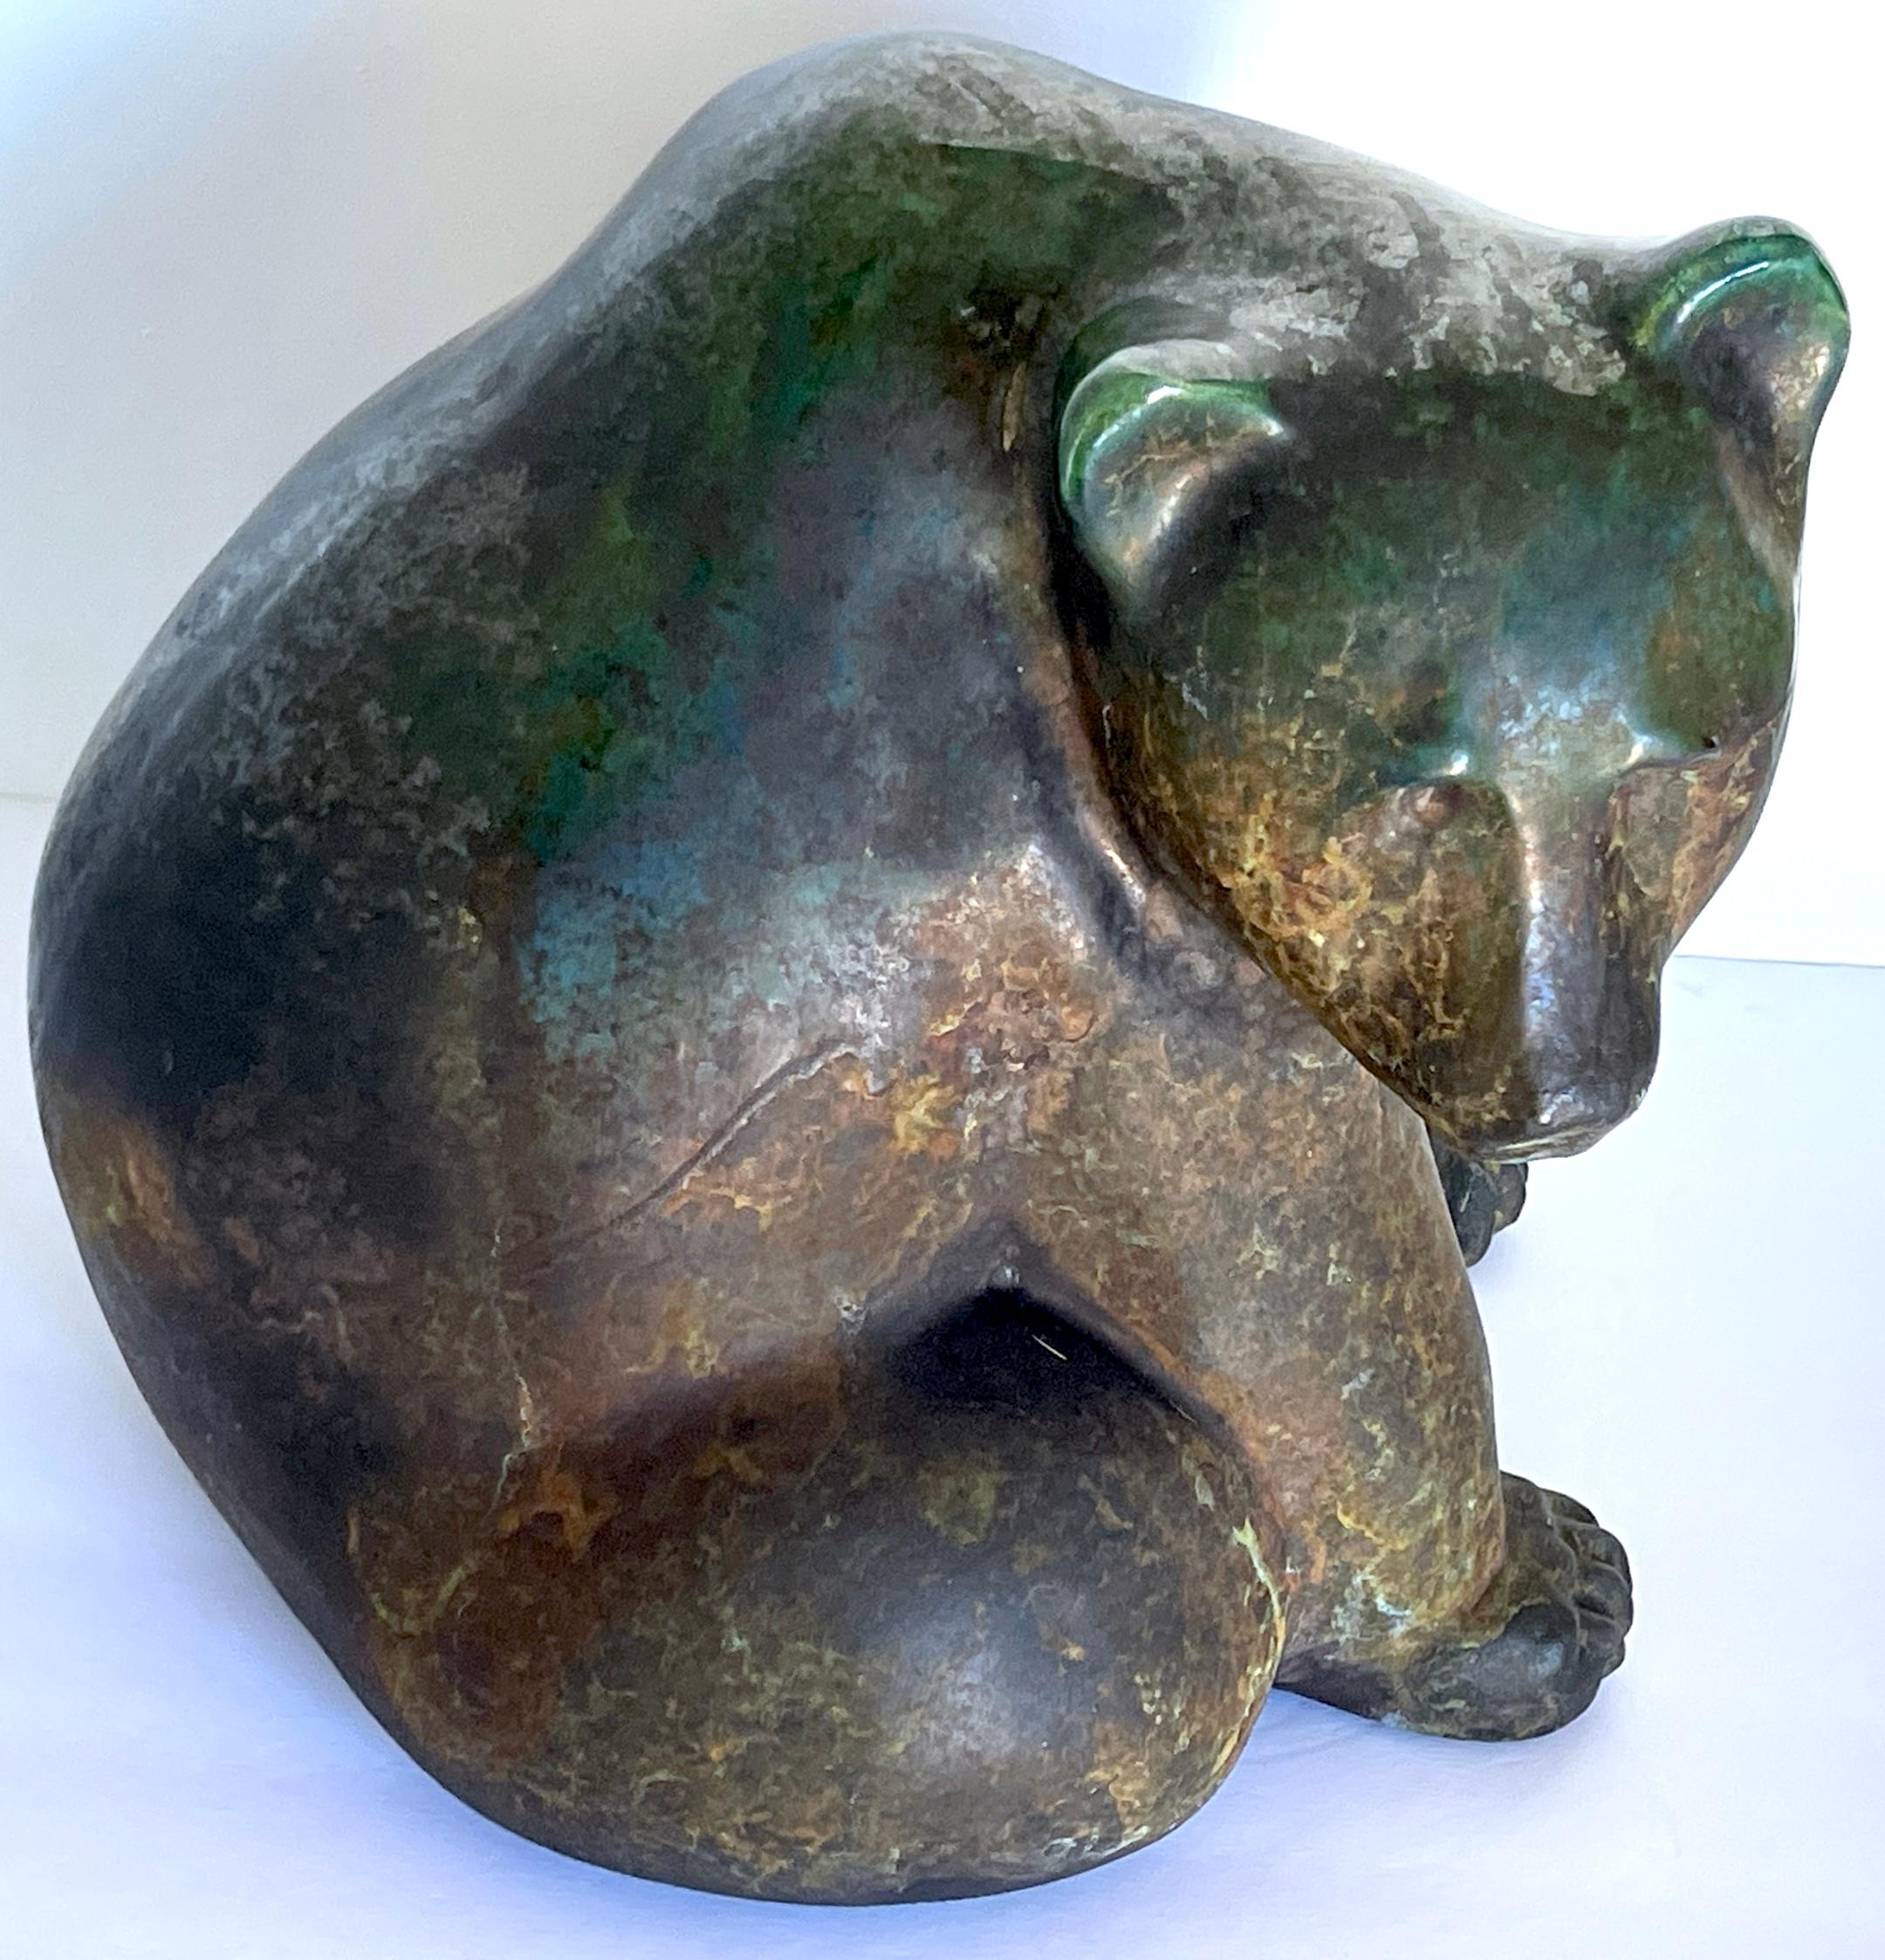 1988 Tony Evans Raku Big Bear Skulptur 
Unterzeichnet 'Evans,88'.
Ein bemerkenswerter 1988 Die Tony Evans Raku Big Bear Skulptur ist ein exquisites Stück Kunstfertigkeit. Diese große sitzende Bärenskulptur aus Raku-Keramik unterstreicht Tony Evans'